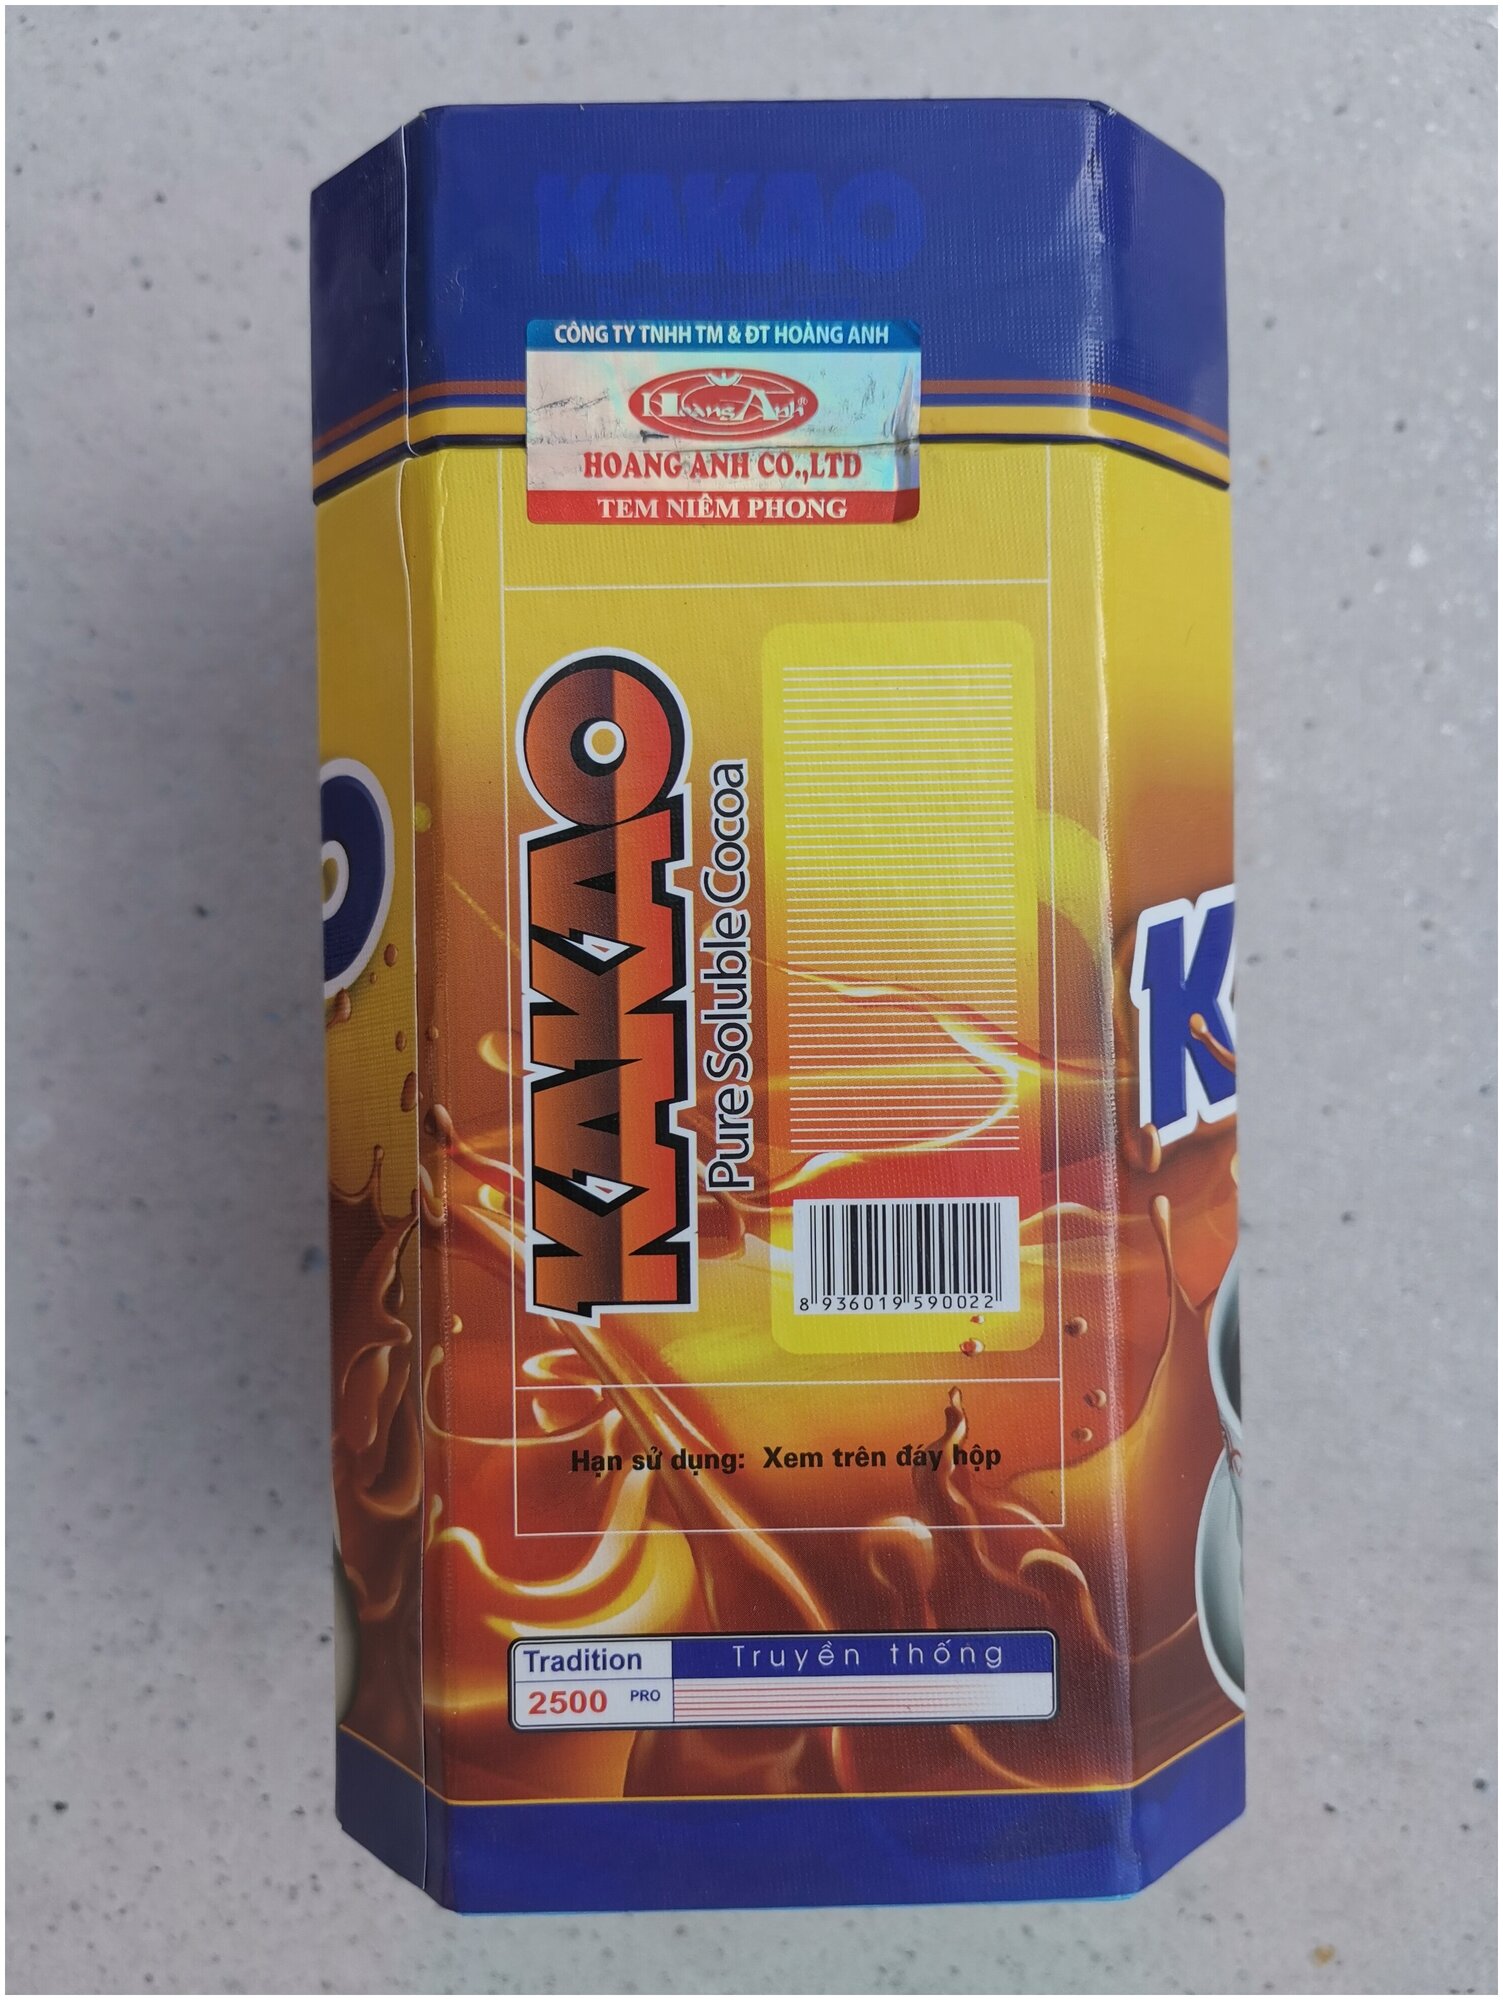 Вьетнамский быстрорастворимый какао HEADMAN c шоколадным вкусом в подарочной коробке, 500 г - фотография № 2